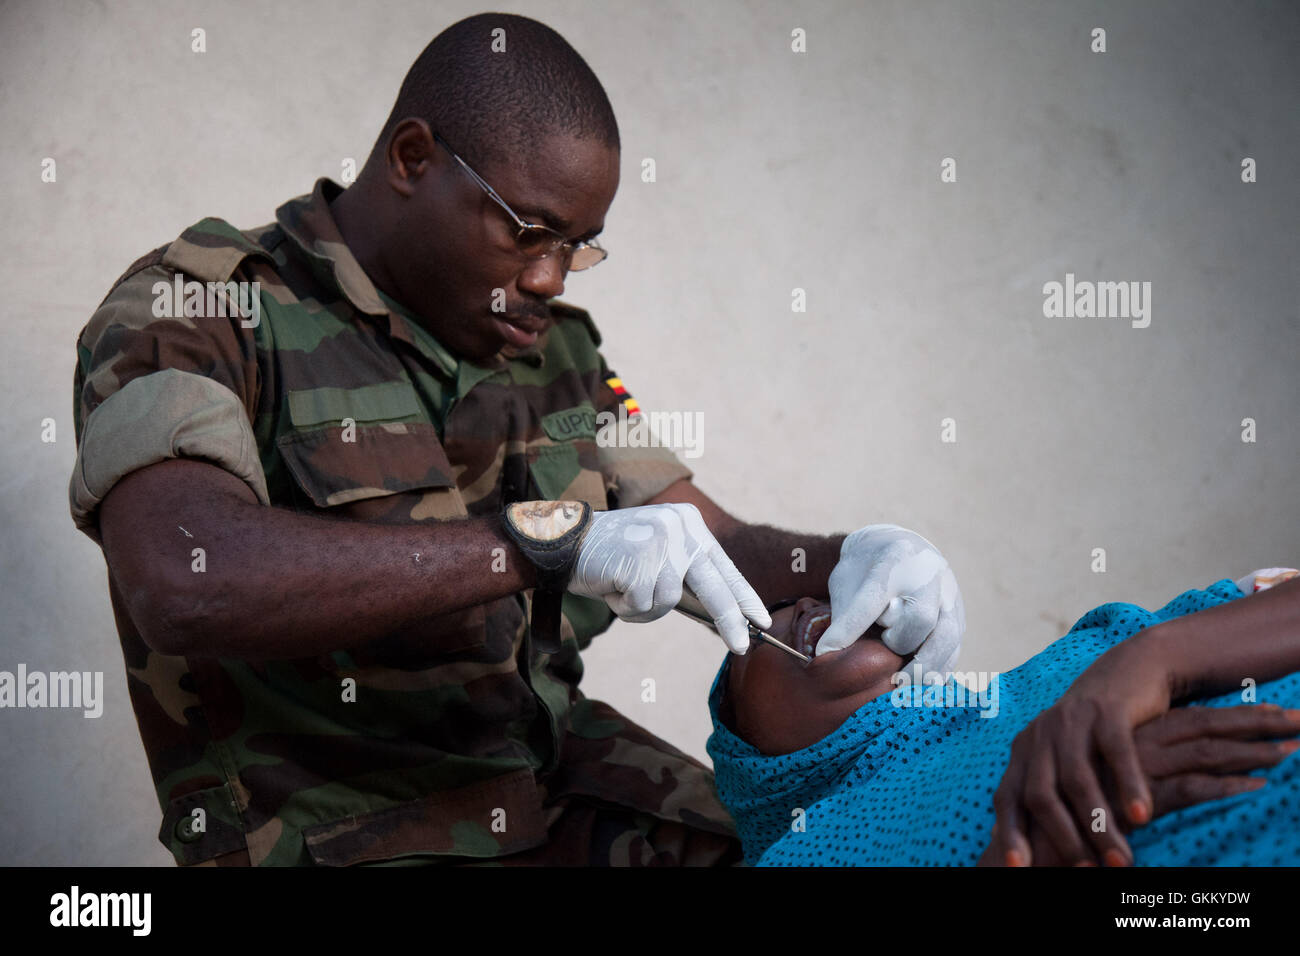 10/09/11, Mogadishu, Somalia - An AMISOM dentist treats a woman at the OPD in Mogadishu, Somalia Stock Photo